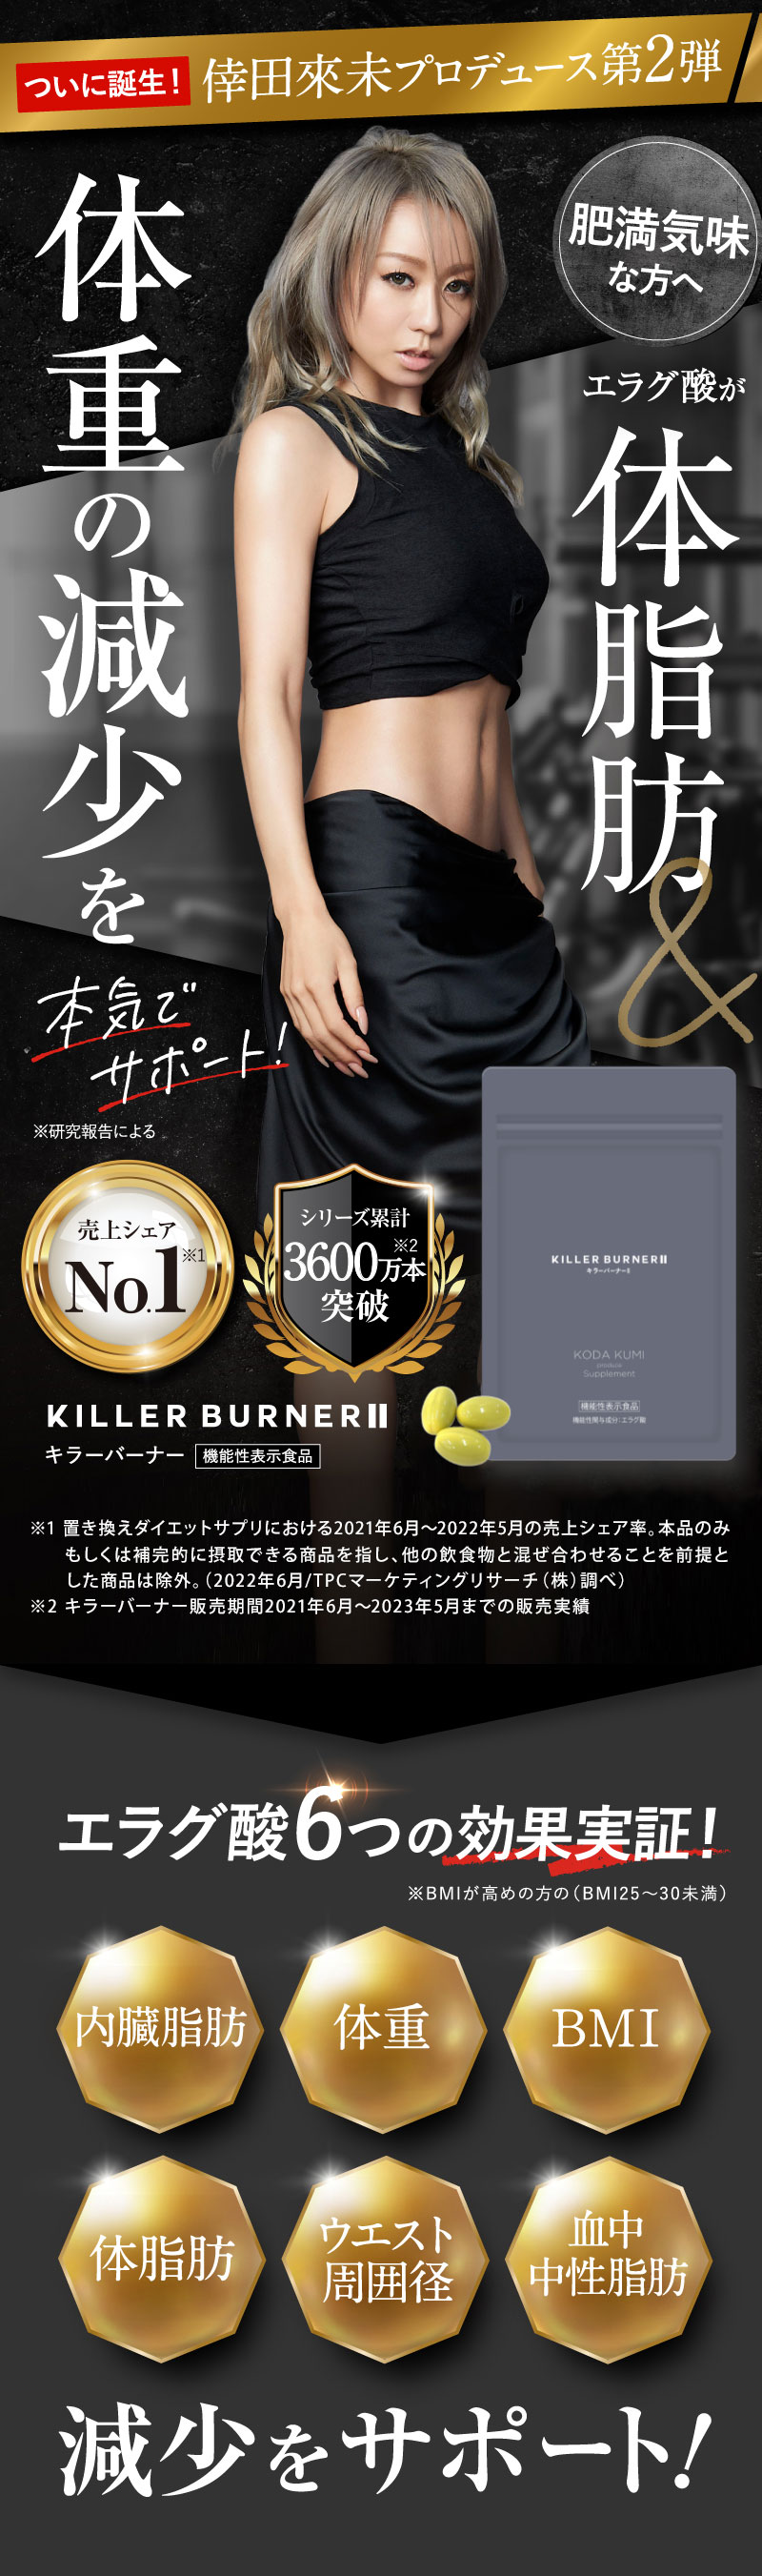 【公式_正規販売店】 キラーバーナー II ダイエットサプリ 倖田來未 プロデュース 1袋45粒 KILLER BURNER 機能性表示食品 BMI